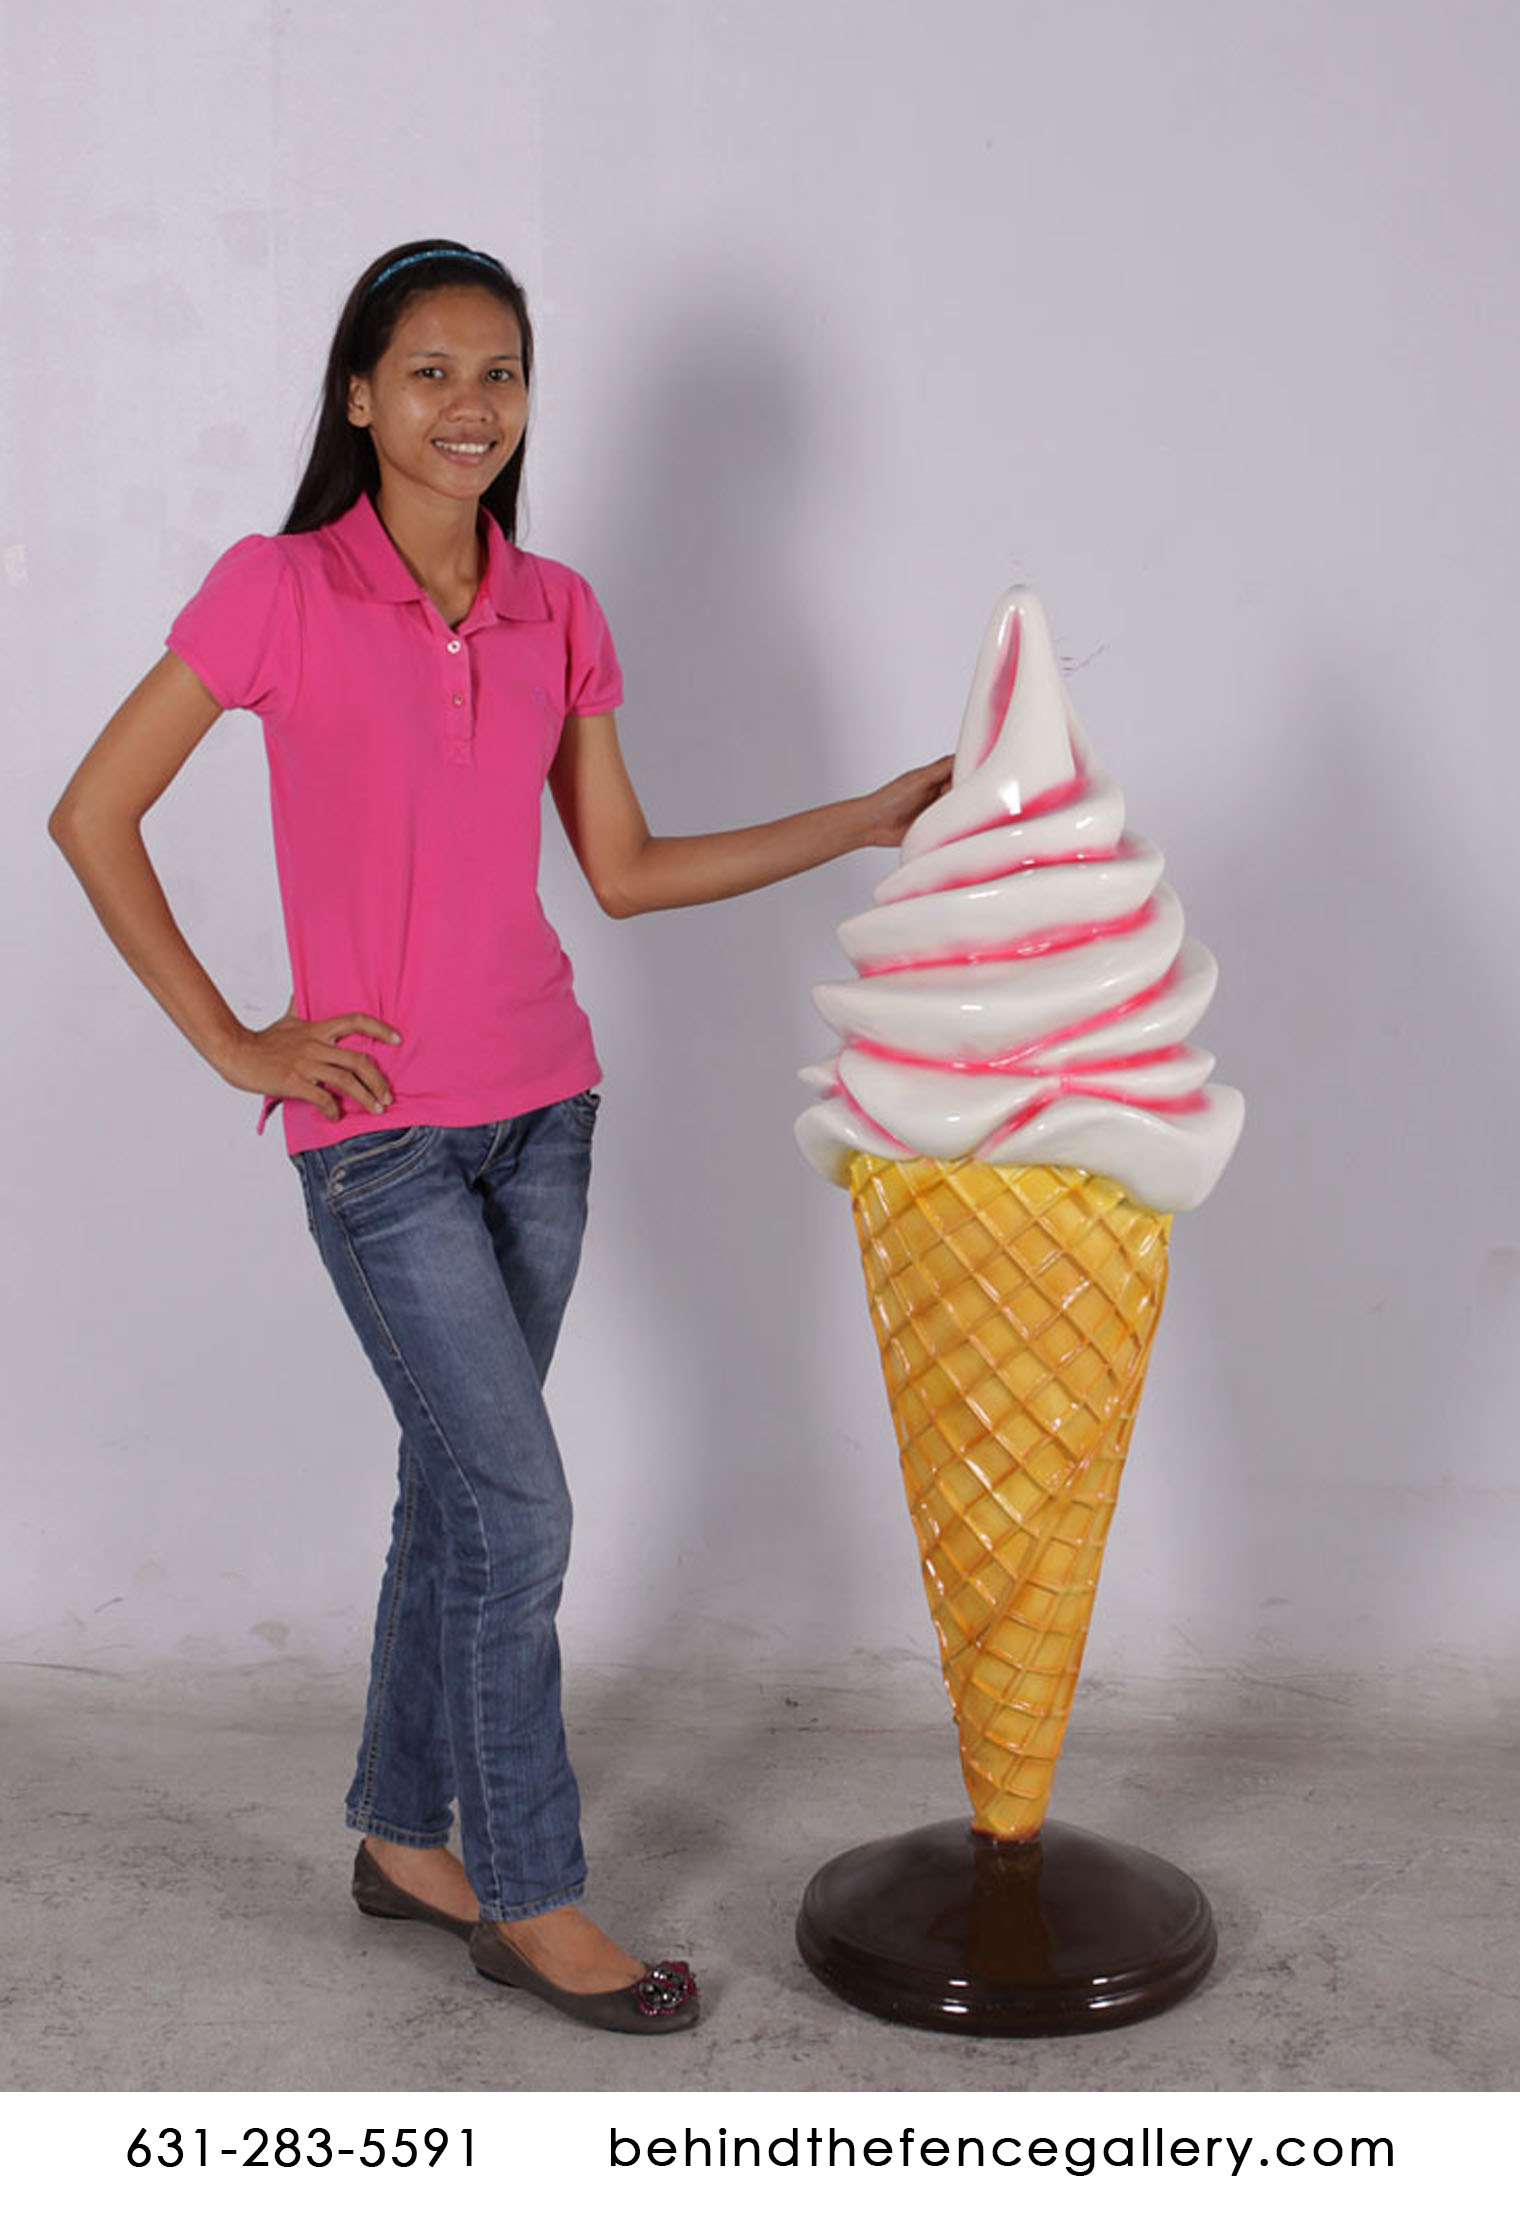 Soft Serve Vanilla Ice Cream Twist Cone on Base Statue